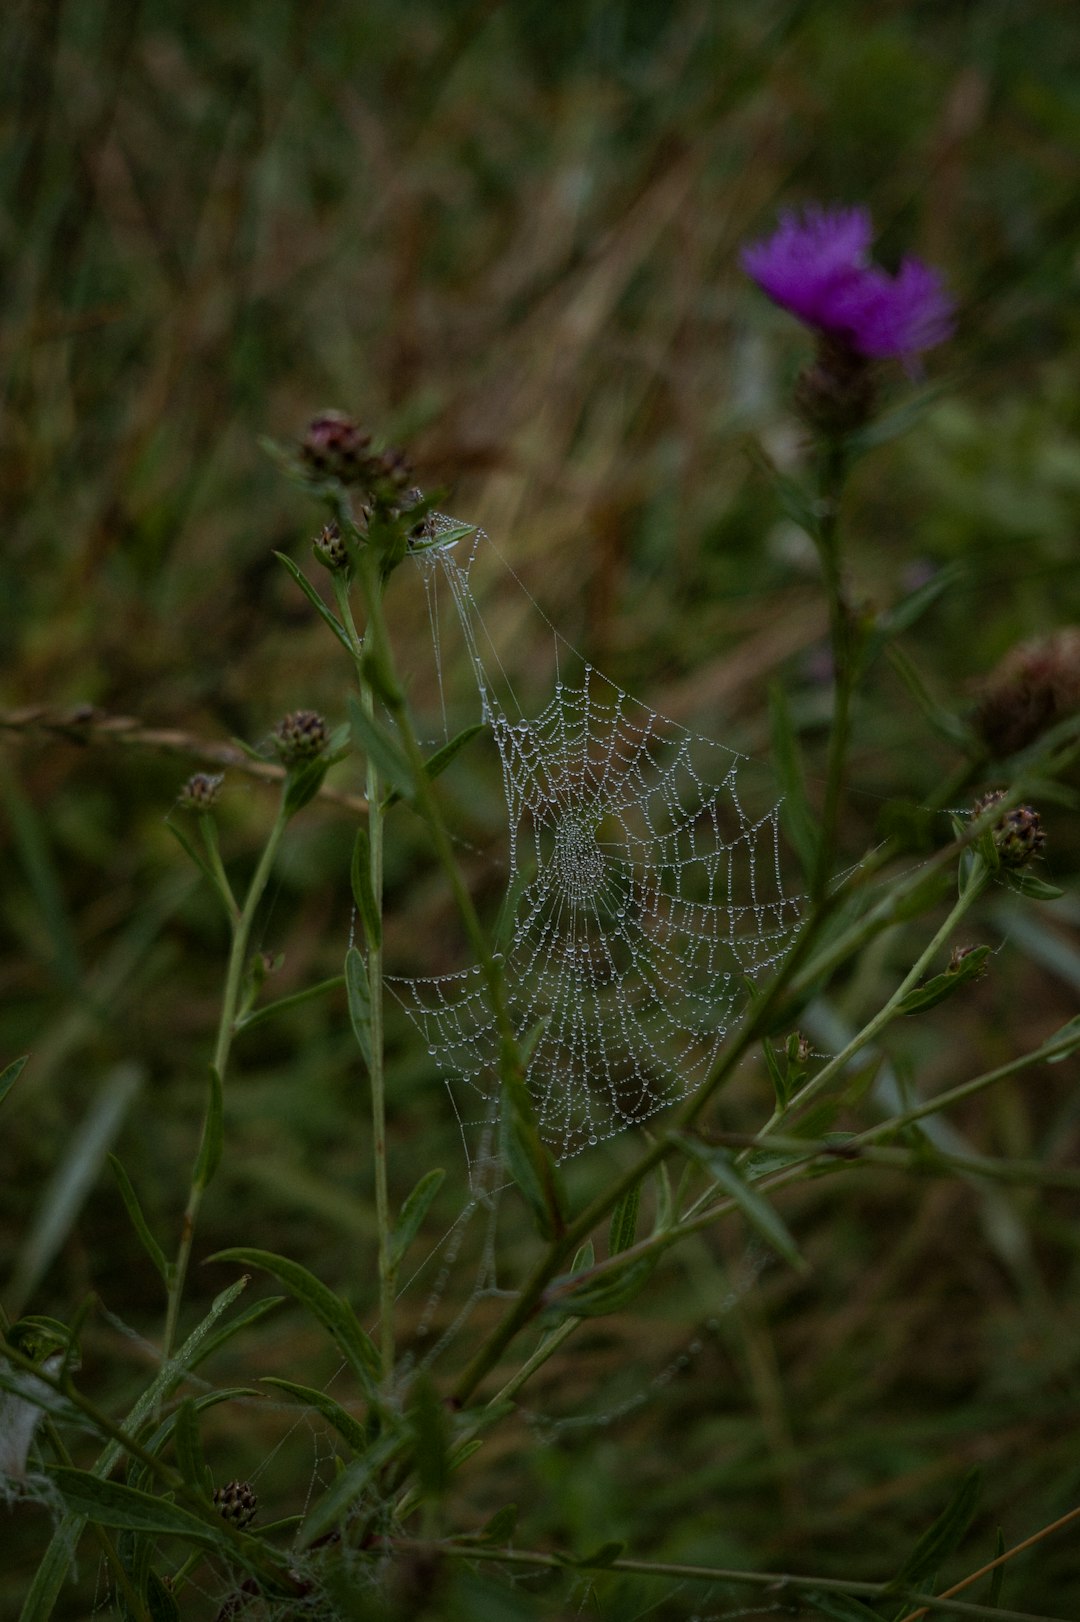 spider web on purple flower